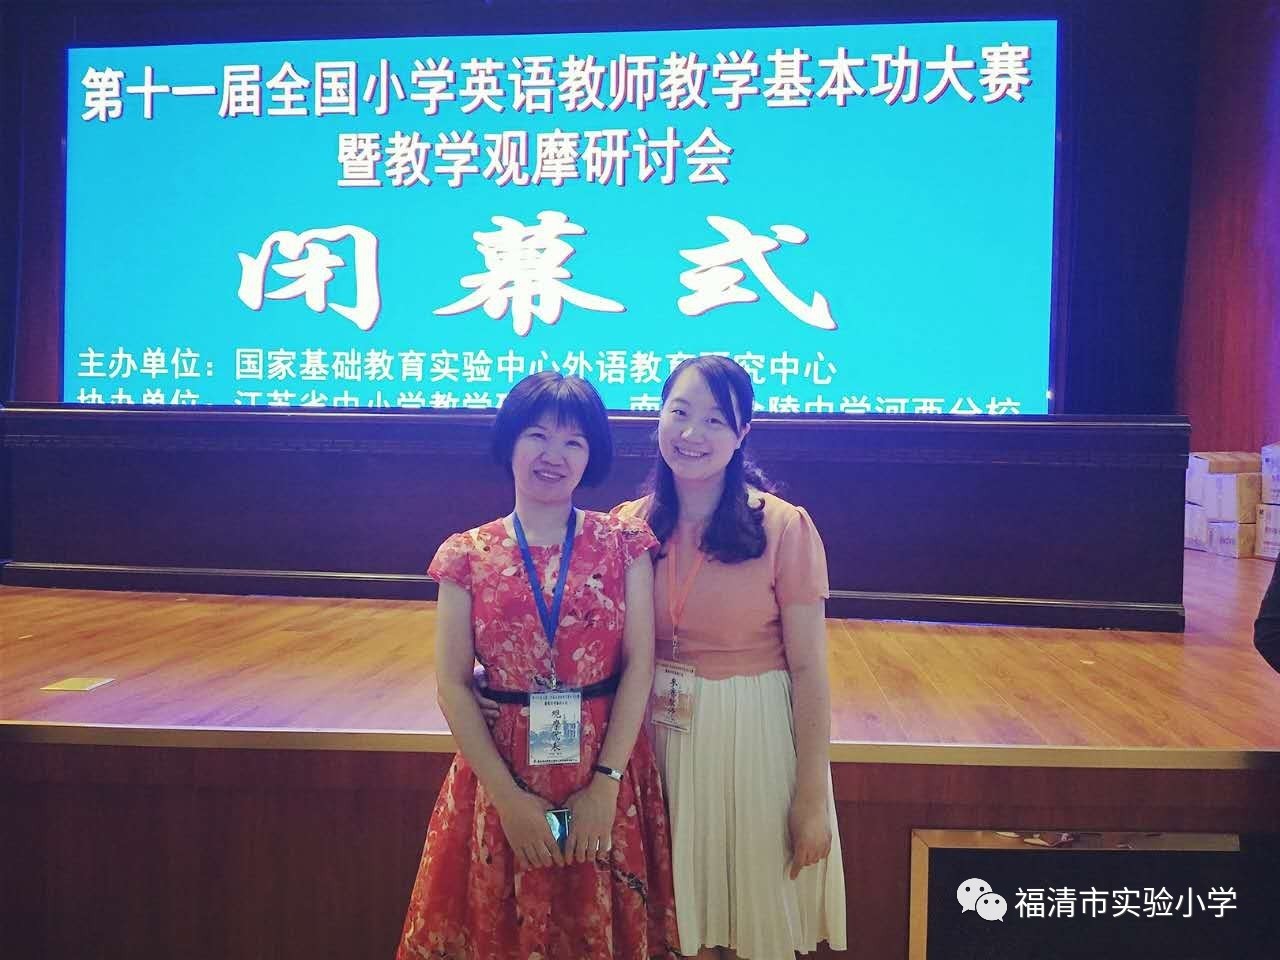 载誉而归 ——福清市实验小学林梦霖老师荣获第十一届全国小学英语